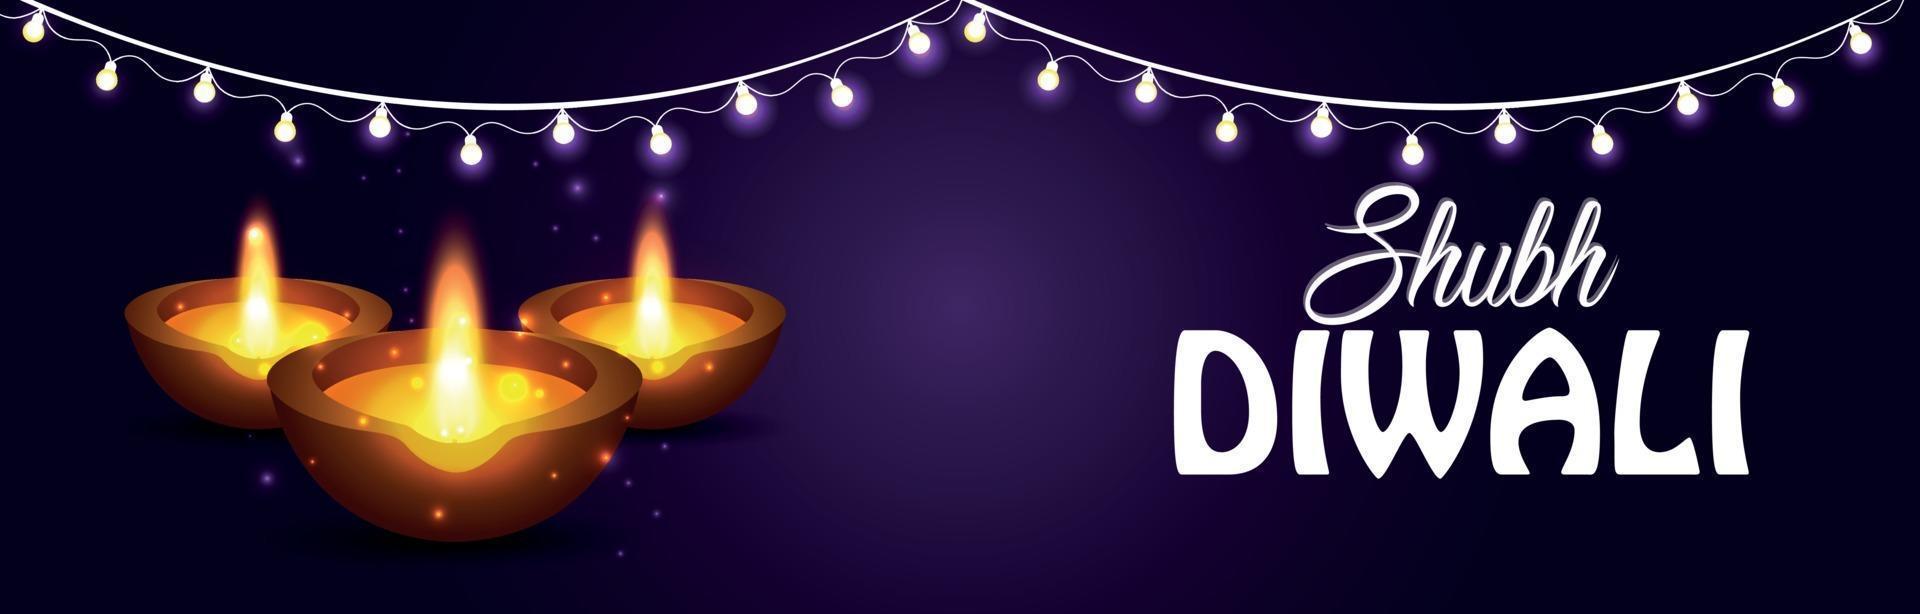 banner o intestazione felice celebrazione di diwali con luce e olio di diwali su sfondo viola vettore